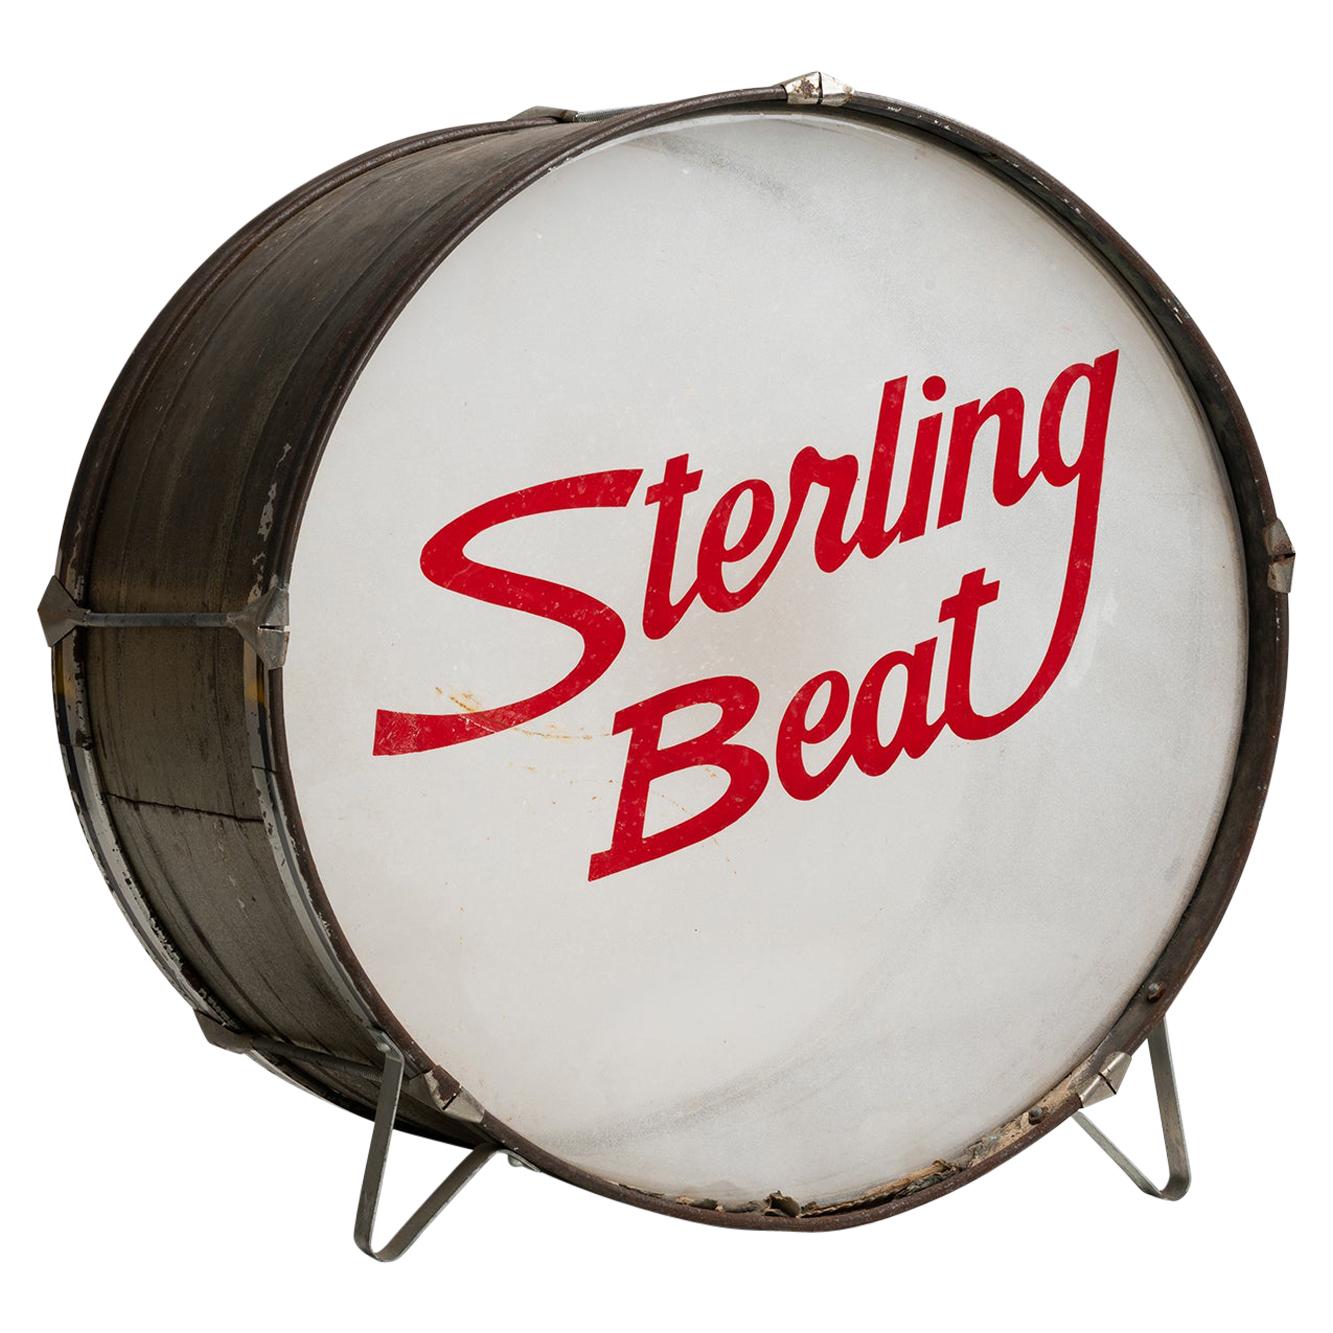 Sterling Beat drum, America, 1977